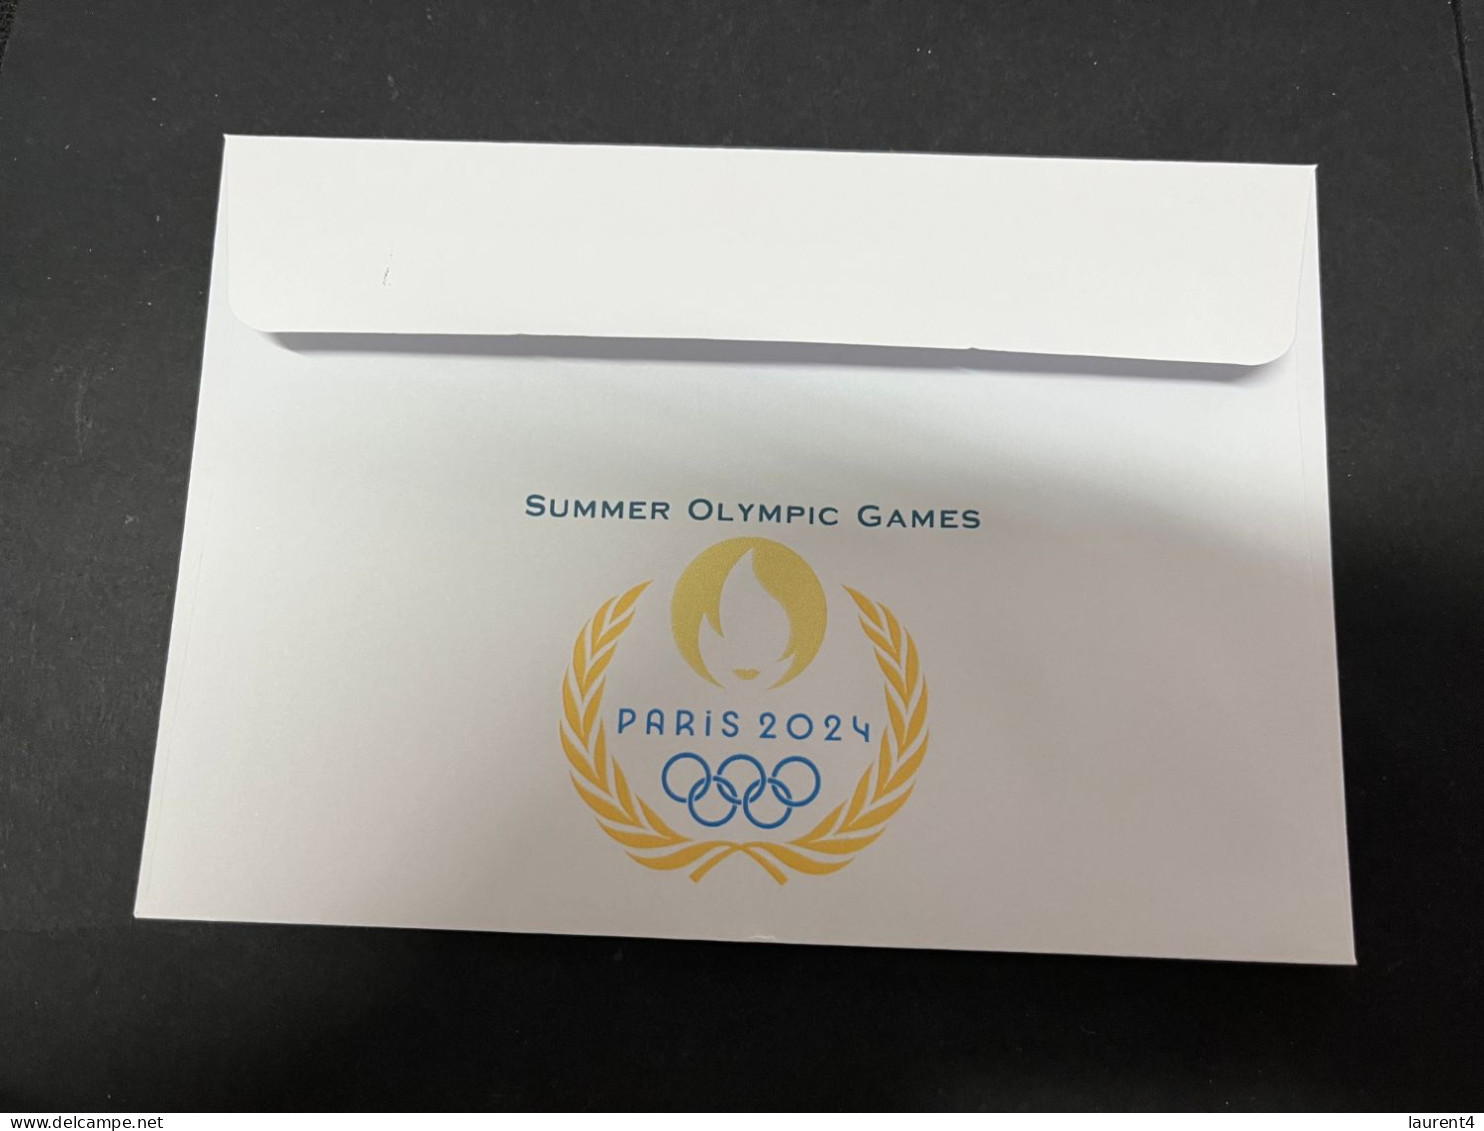 5-5-2024 (4 Z 12 A) Paris Olympic Games 2024 - #AllezAUS - Summer 2024: Paris